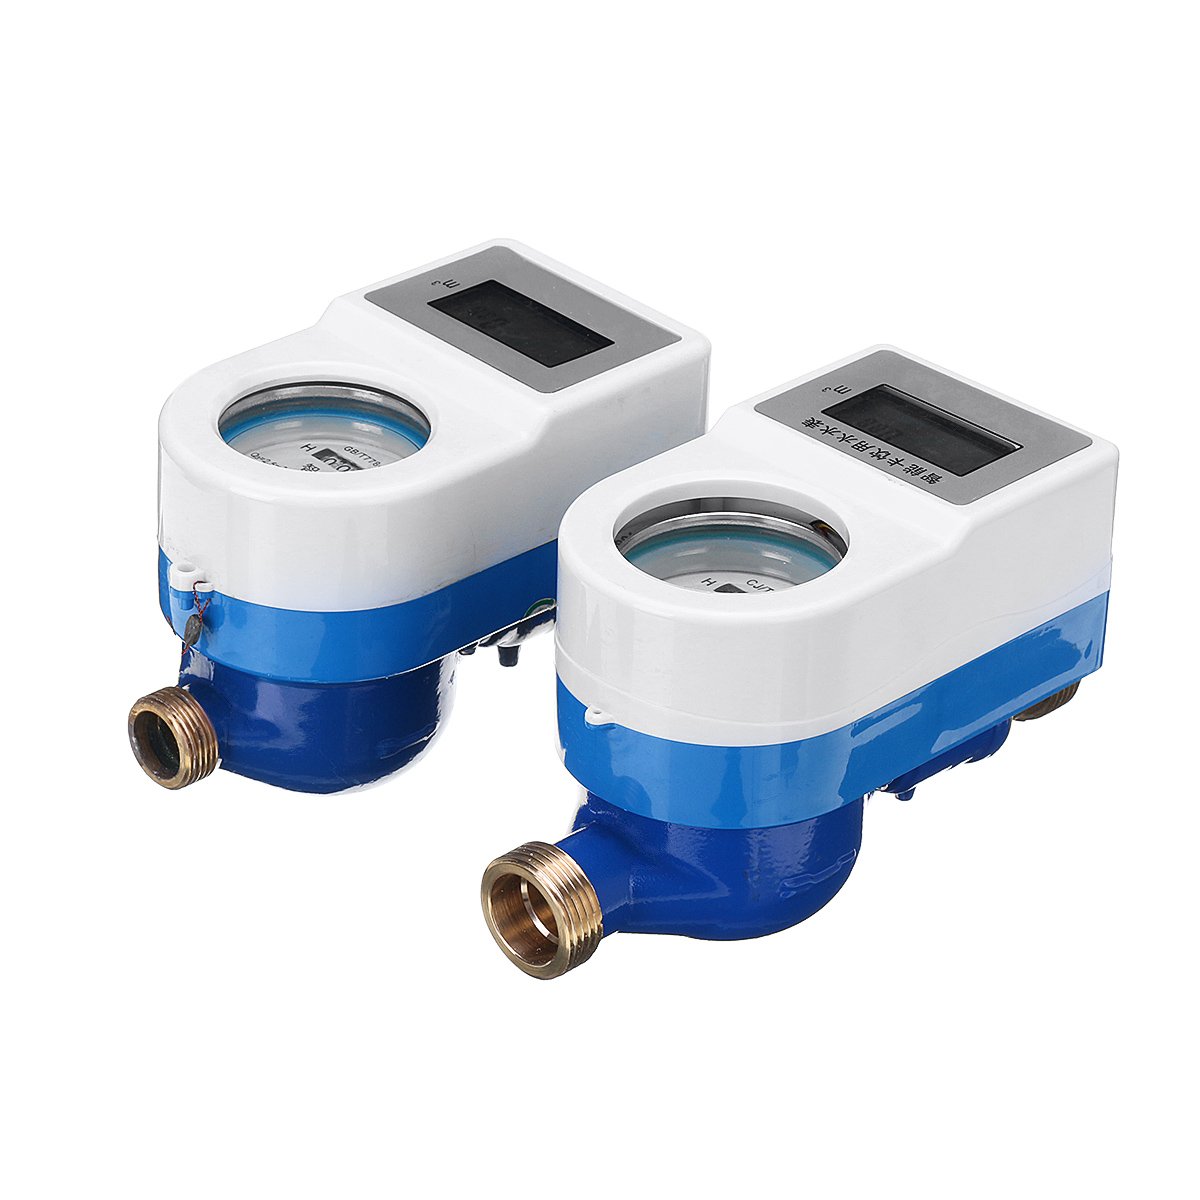 1520mm-Smart-Cold-Water-Meter-Wireless-Copper-Measuring-Tap-Home-Garden-Water-Flow-Sensor-1549744